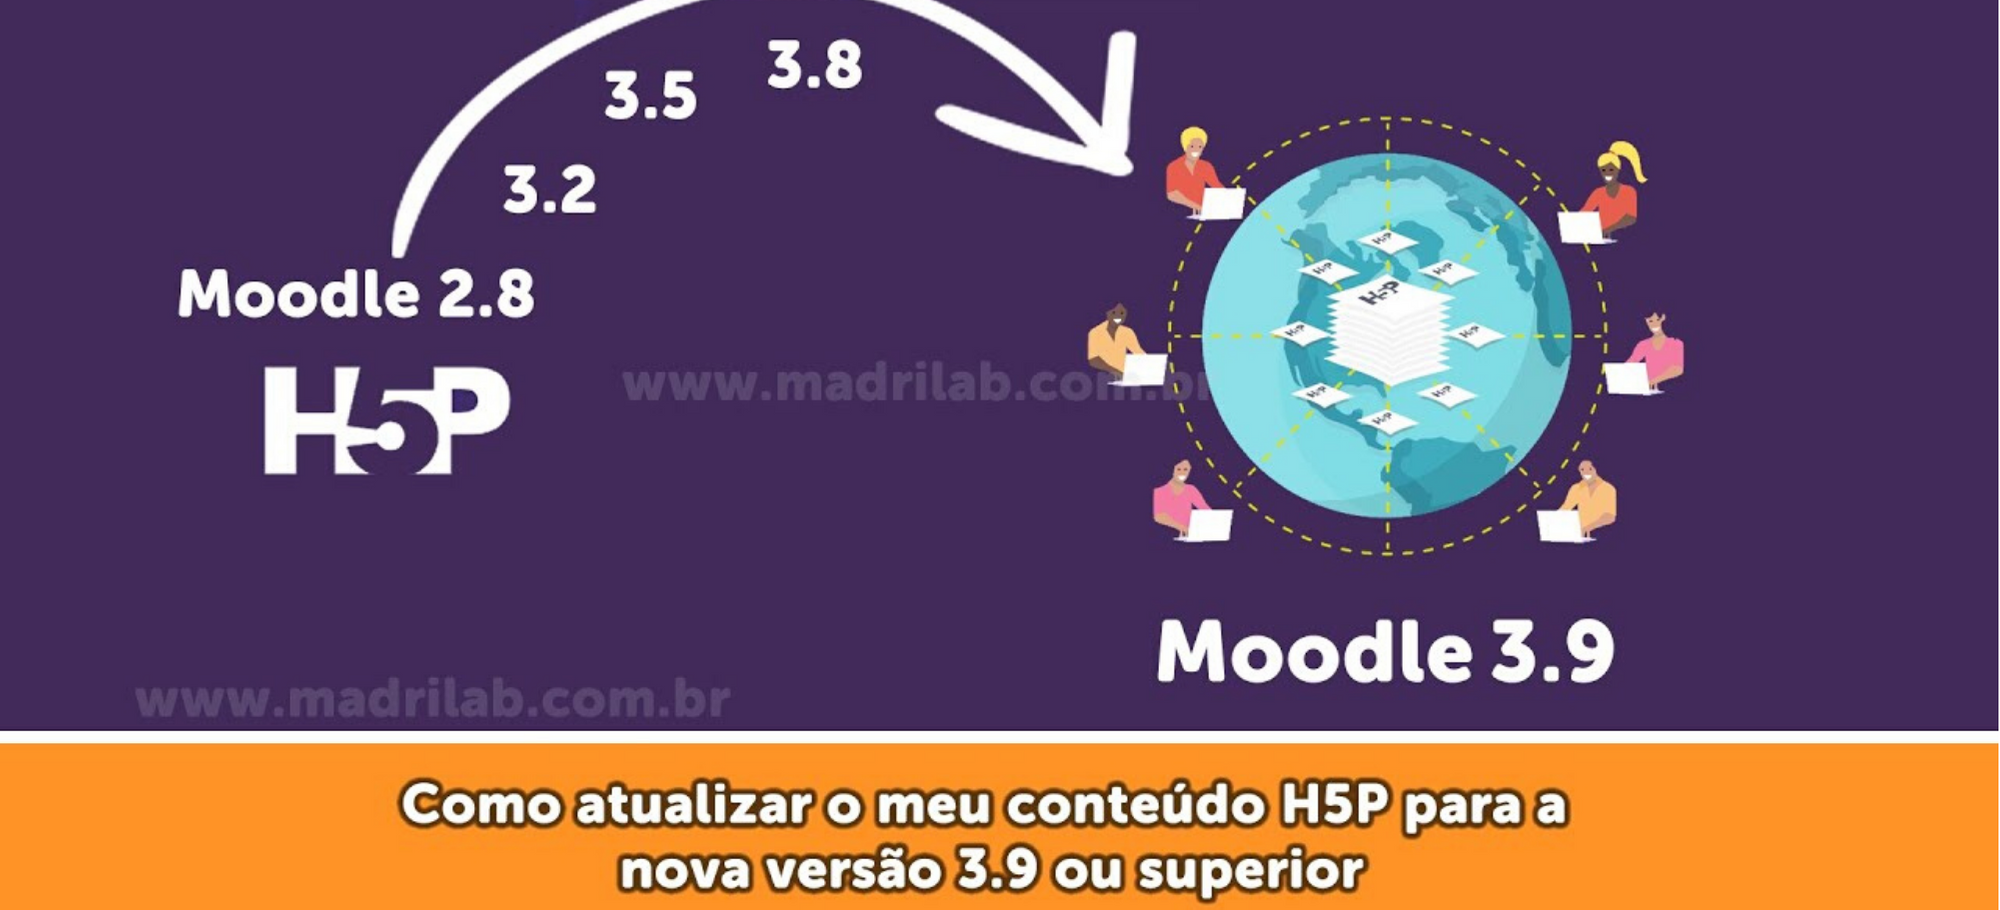 [Curso Moodle] Como atualizar as minhas atividades H5P para a versão 3.9 do Moodle?